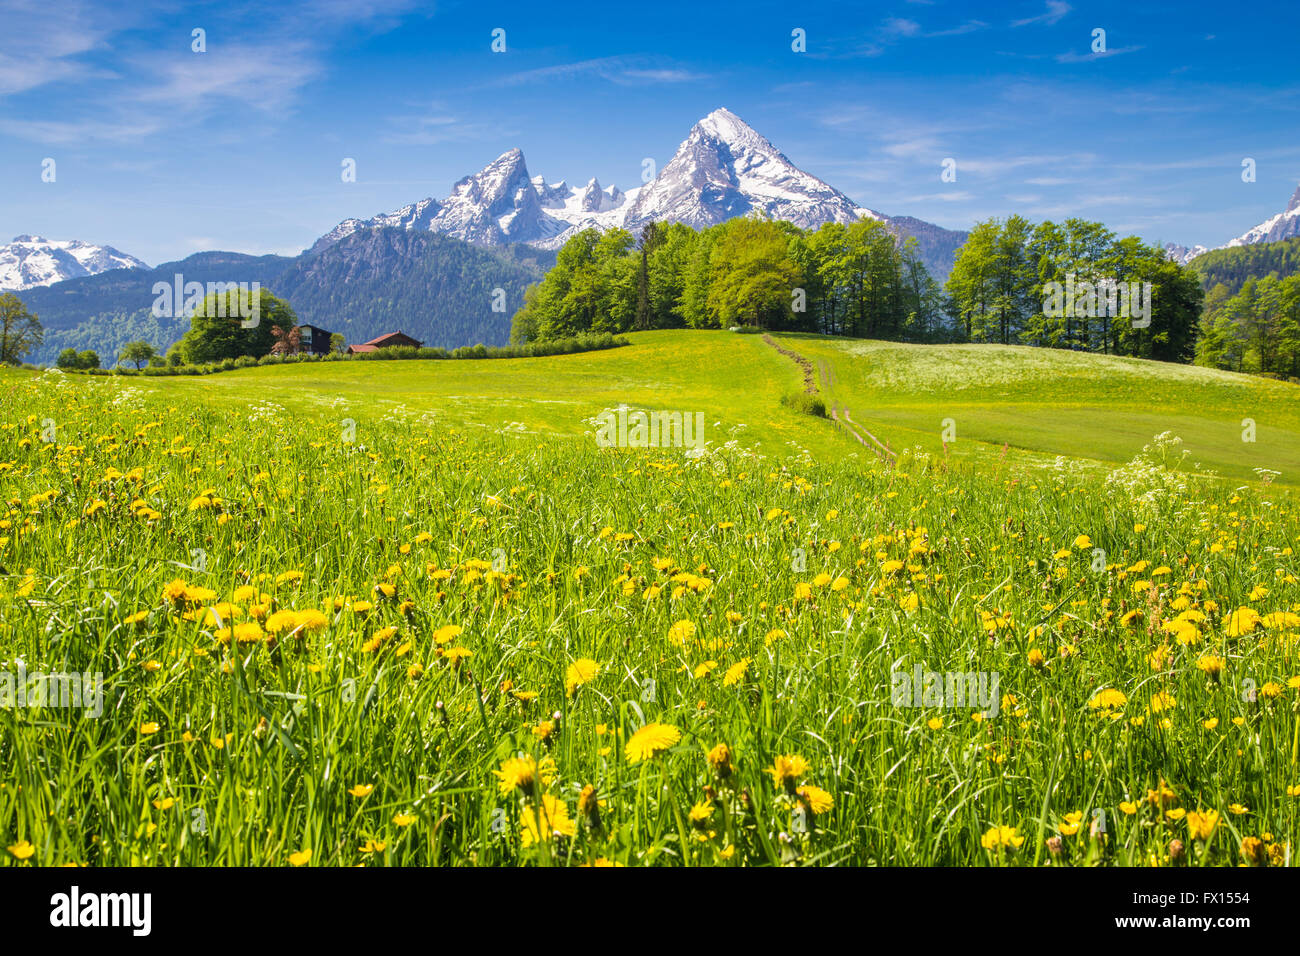 Paysage idyllique dans les Alpes avec de vertes prairies, fleurs et les sommets des montagnes enneigées en arrière-plan Banque D'Images